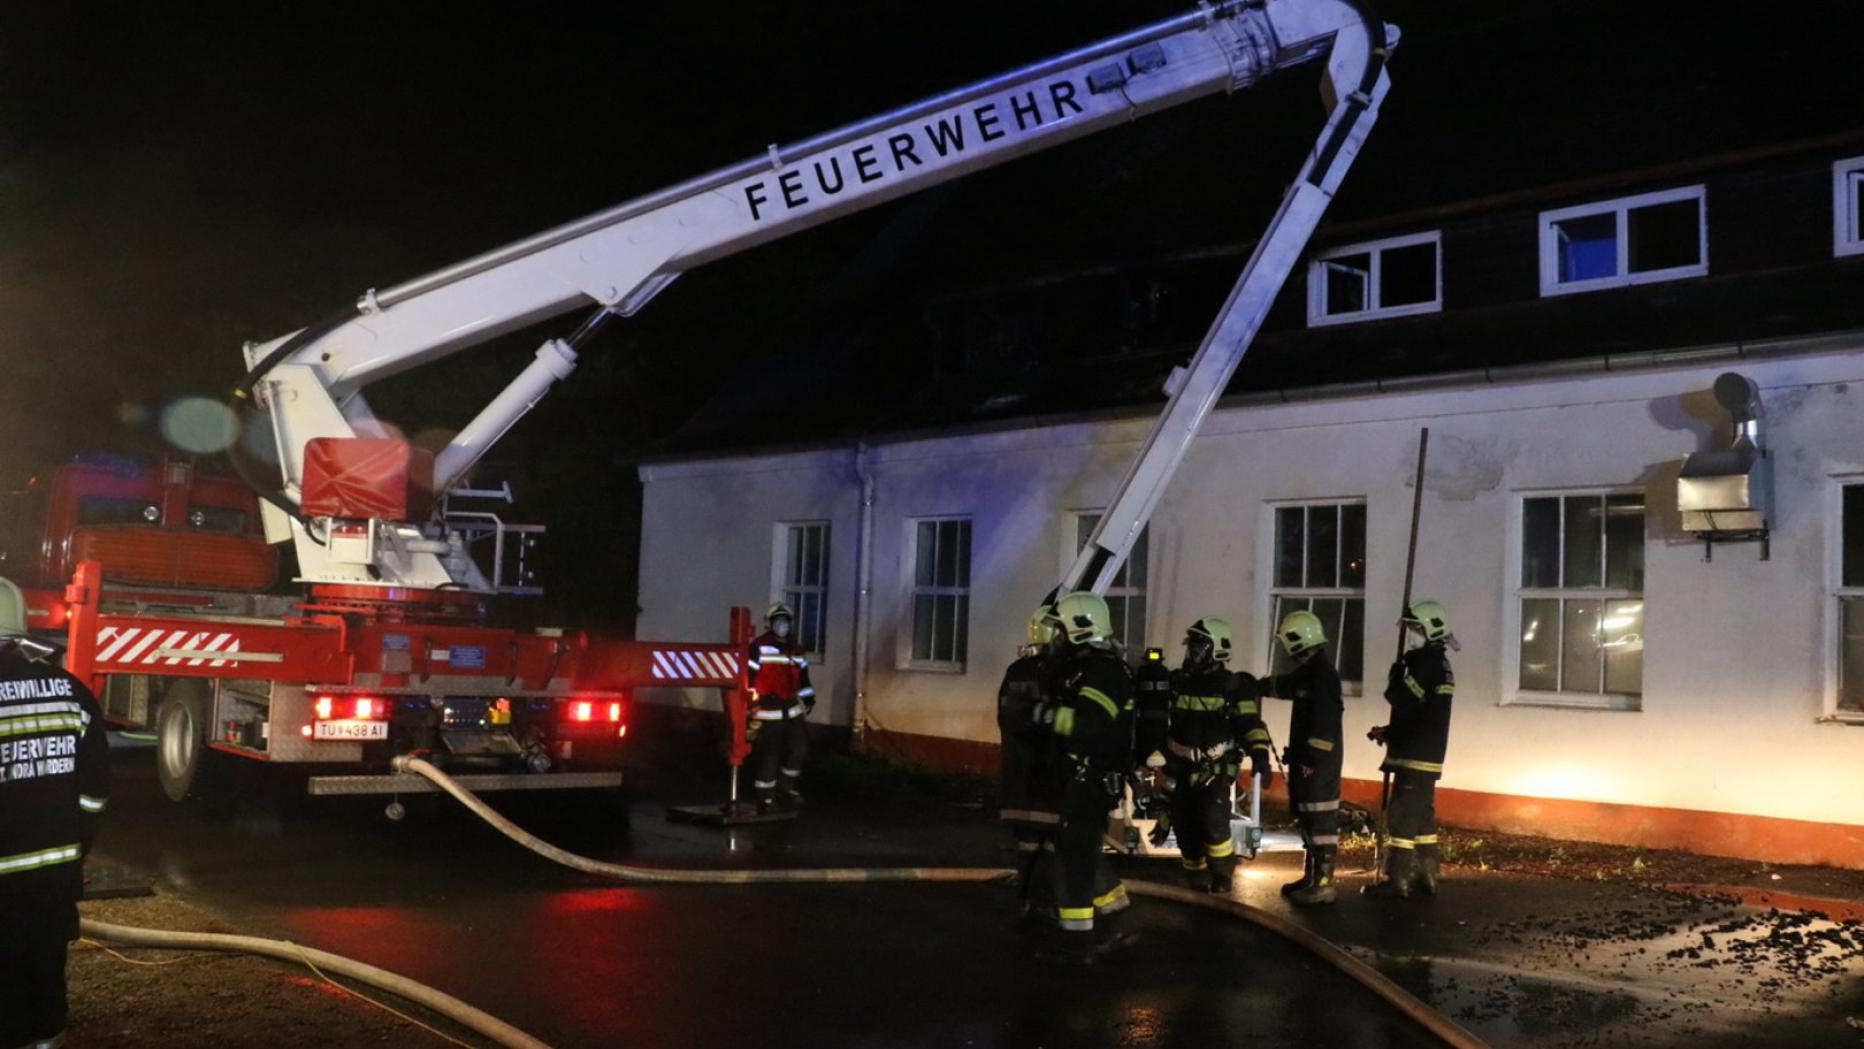 Feuerwehreinsatz: Brand im Flchtlingsheim | zarell.com